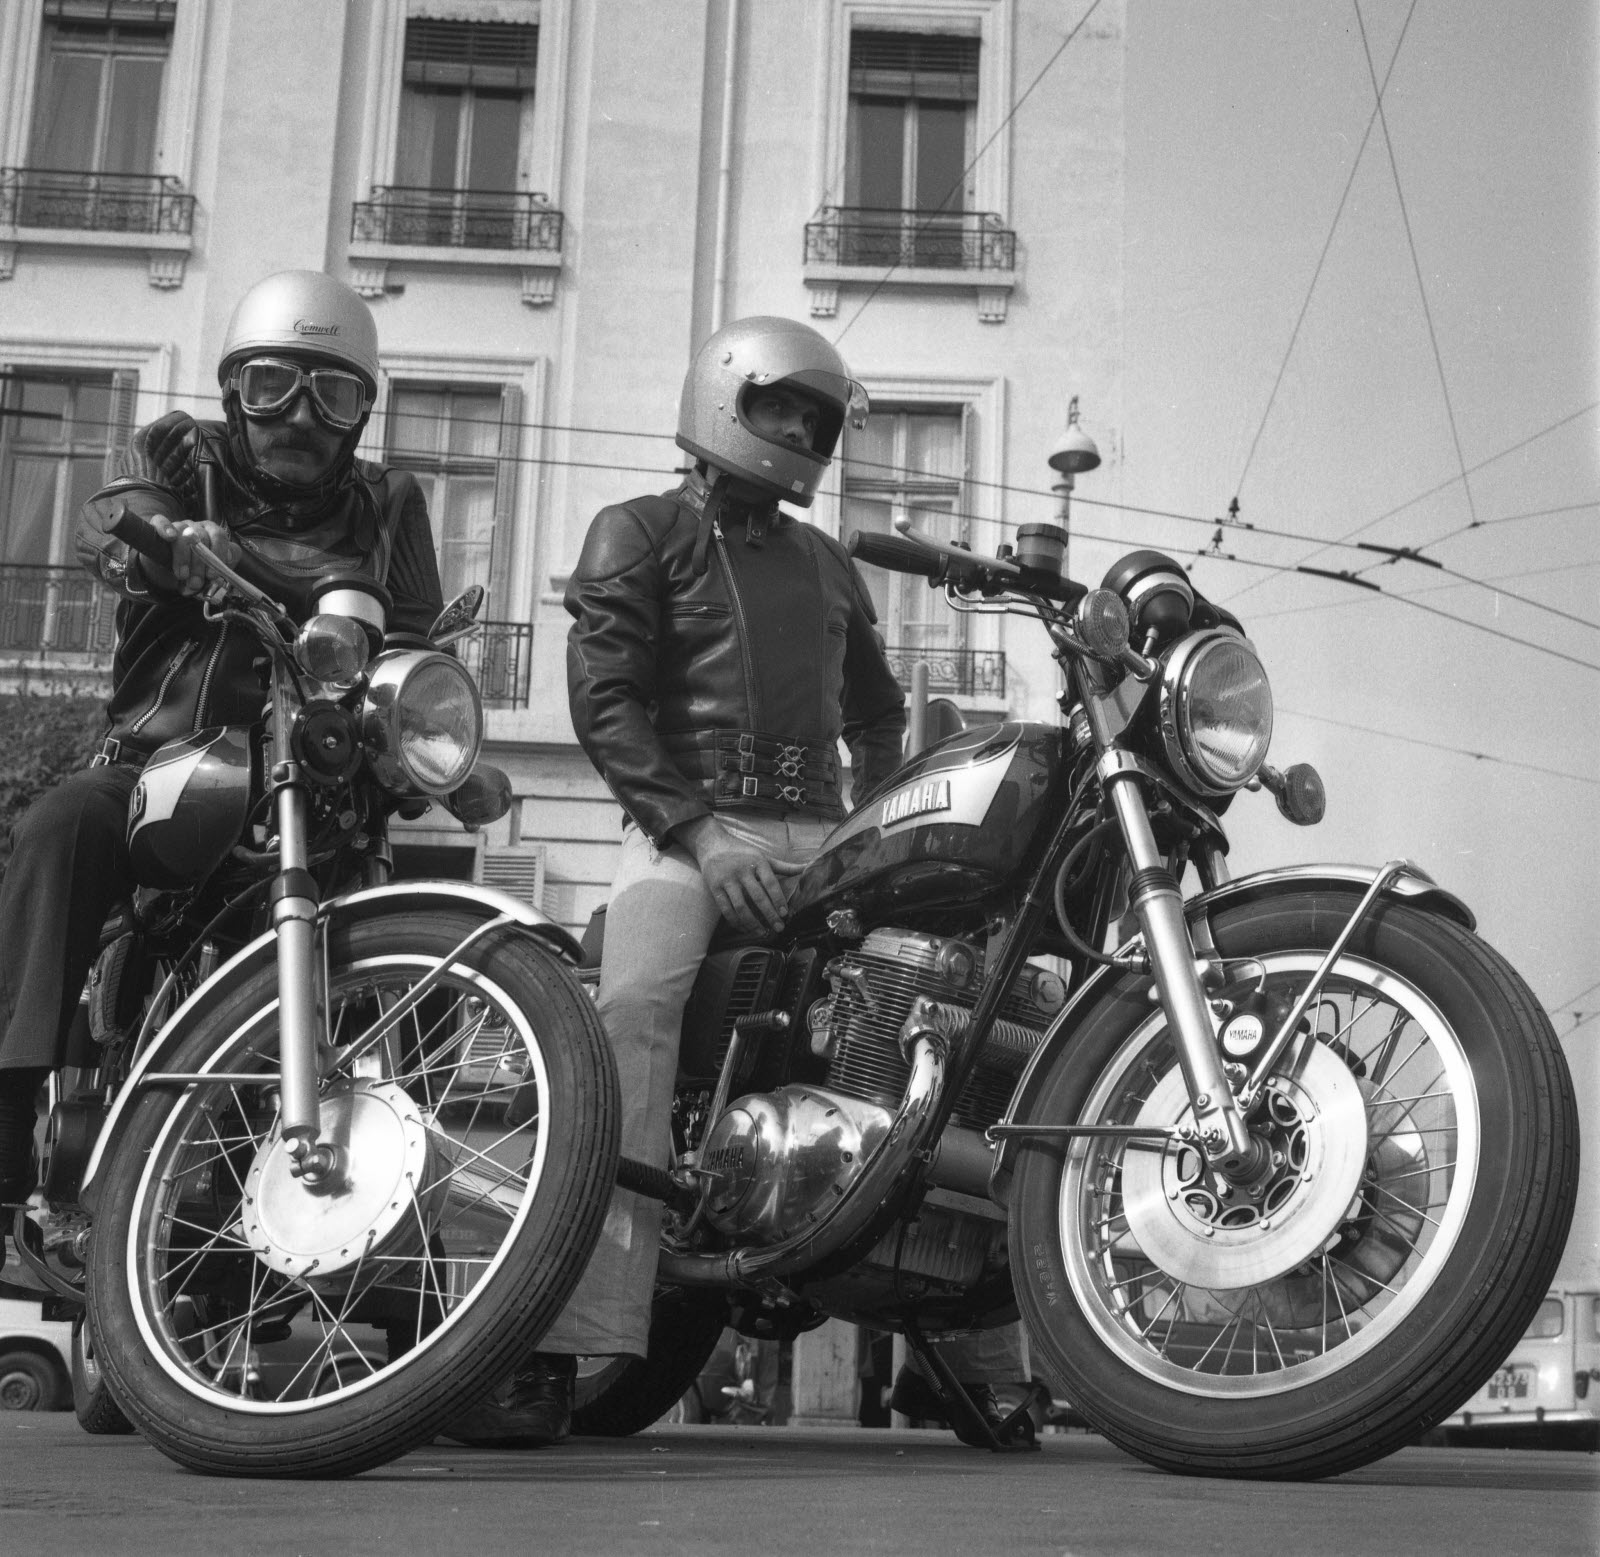 Motos à Lyon dans les années 70 - Page 2 Un-loo10